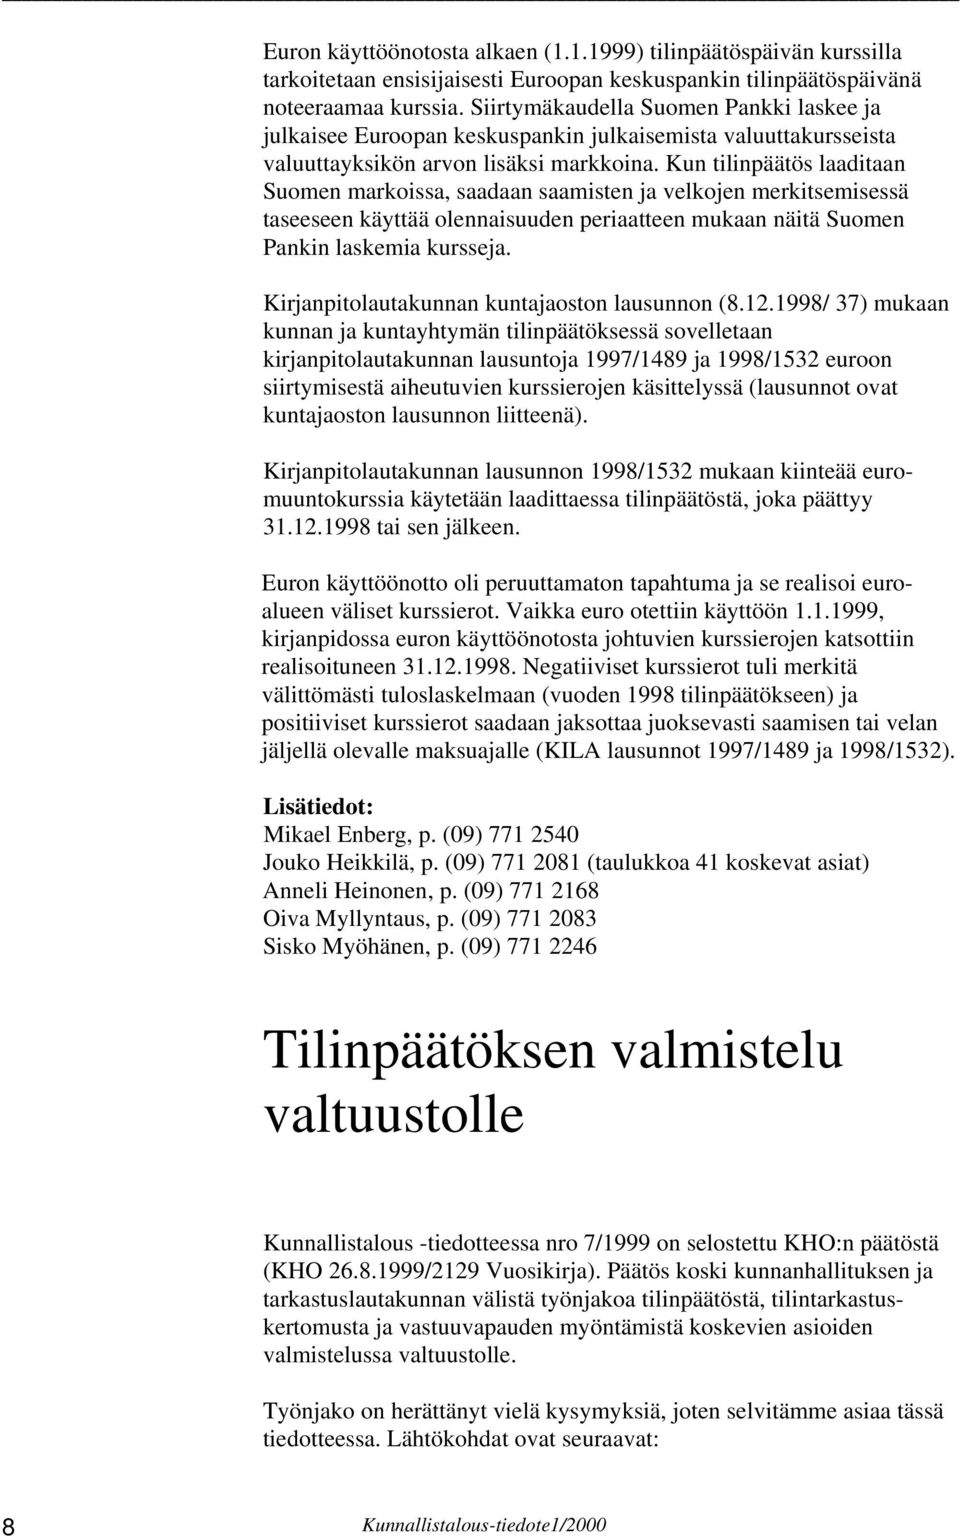 Kun tilinpäätös laaditaan Suomen markoissa, saadaan saamisten ja velkojen merkitsemisessä taseeseen käyttää olennaisuuden periaatteen mukaan näitä Suomen Pankin laskemia kursseja.